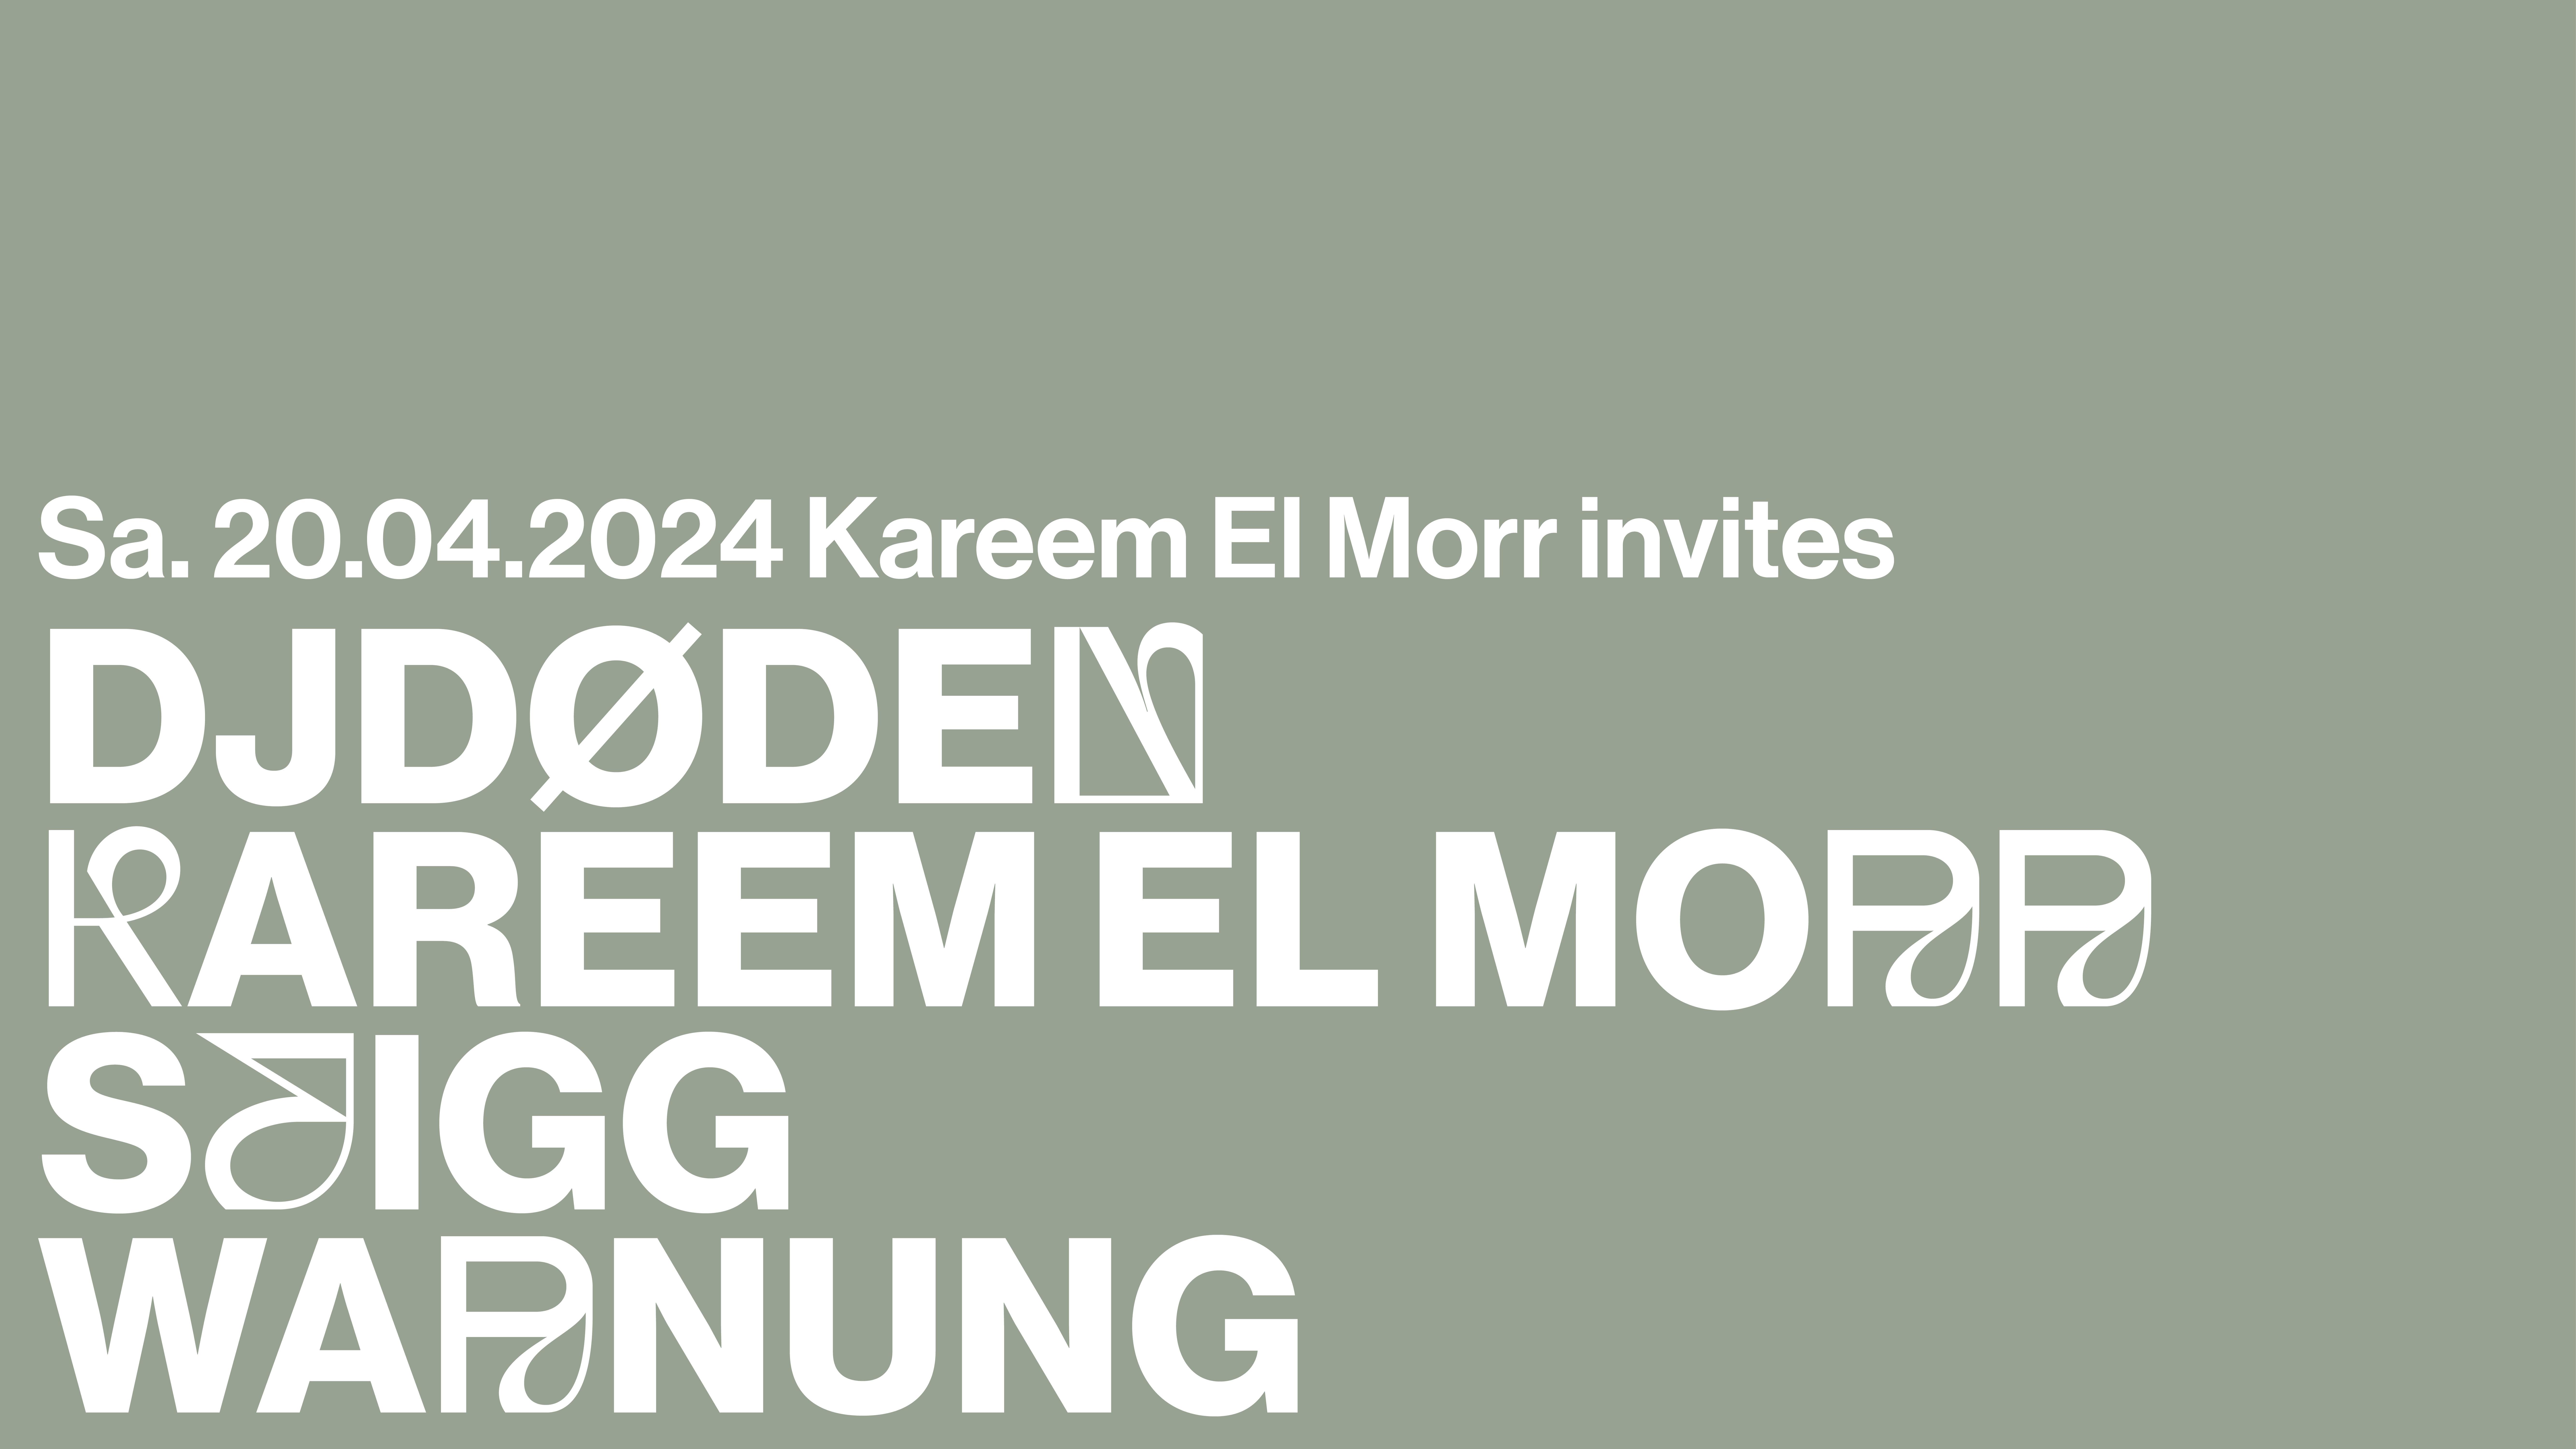 Kareem El Morr INVITES djdøden, Kareem El Morr, Seigg & Warnung - フライヤー表